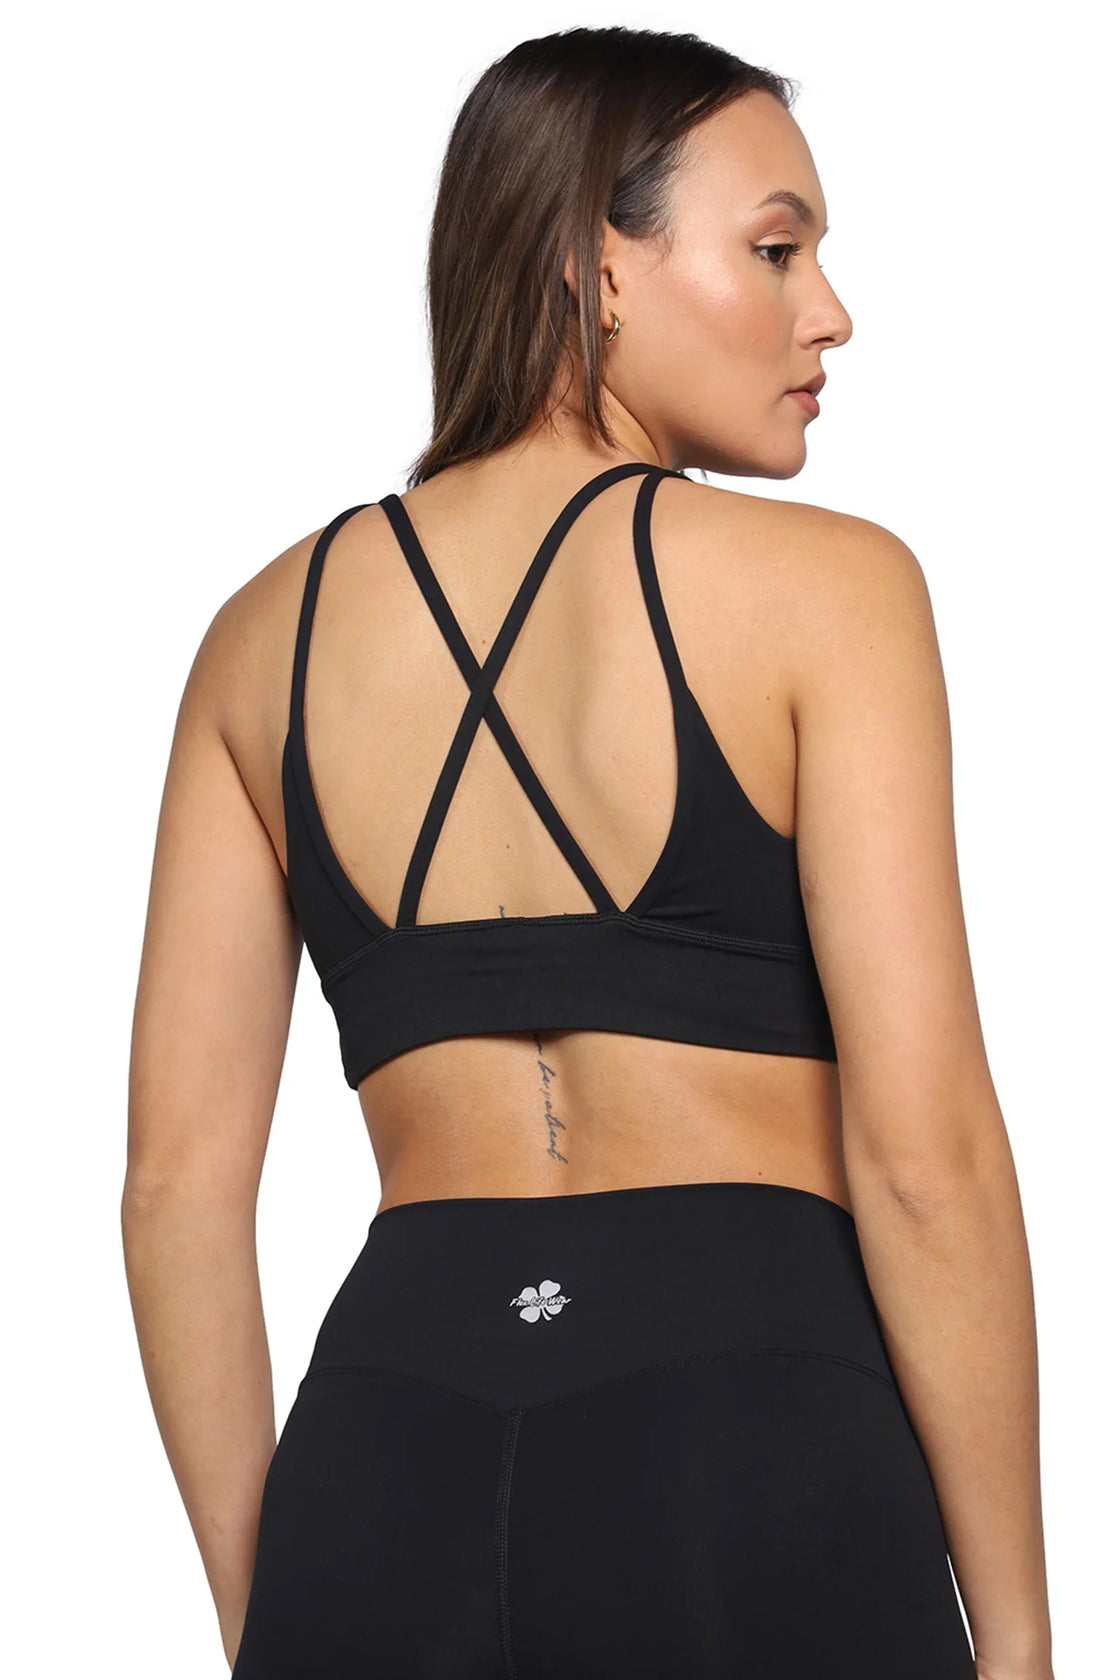 Strappy bra for yoga in black